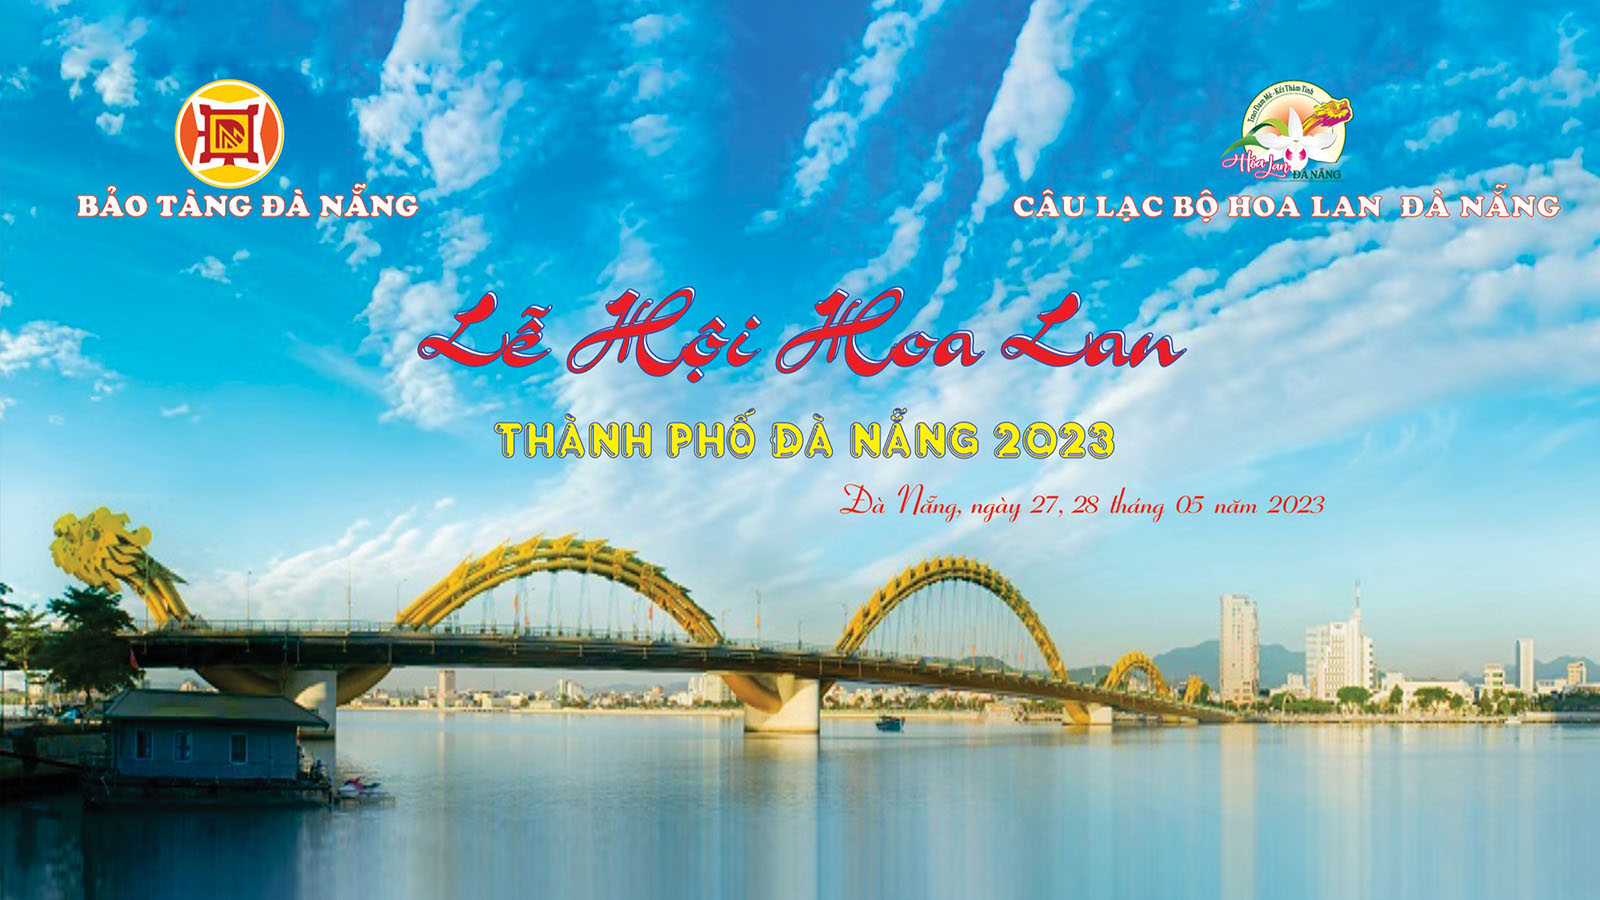 Lễ hội hoa lan thành phố Đà Nẵng năm 2023 - Cổng thông tin du lịch ...